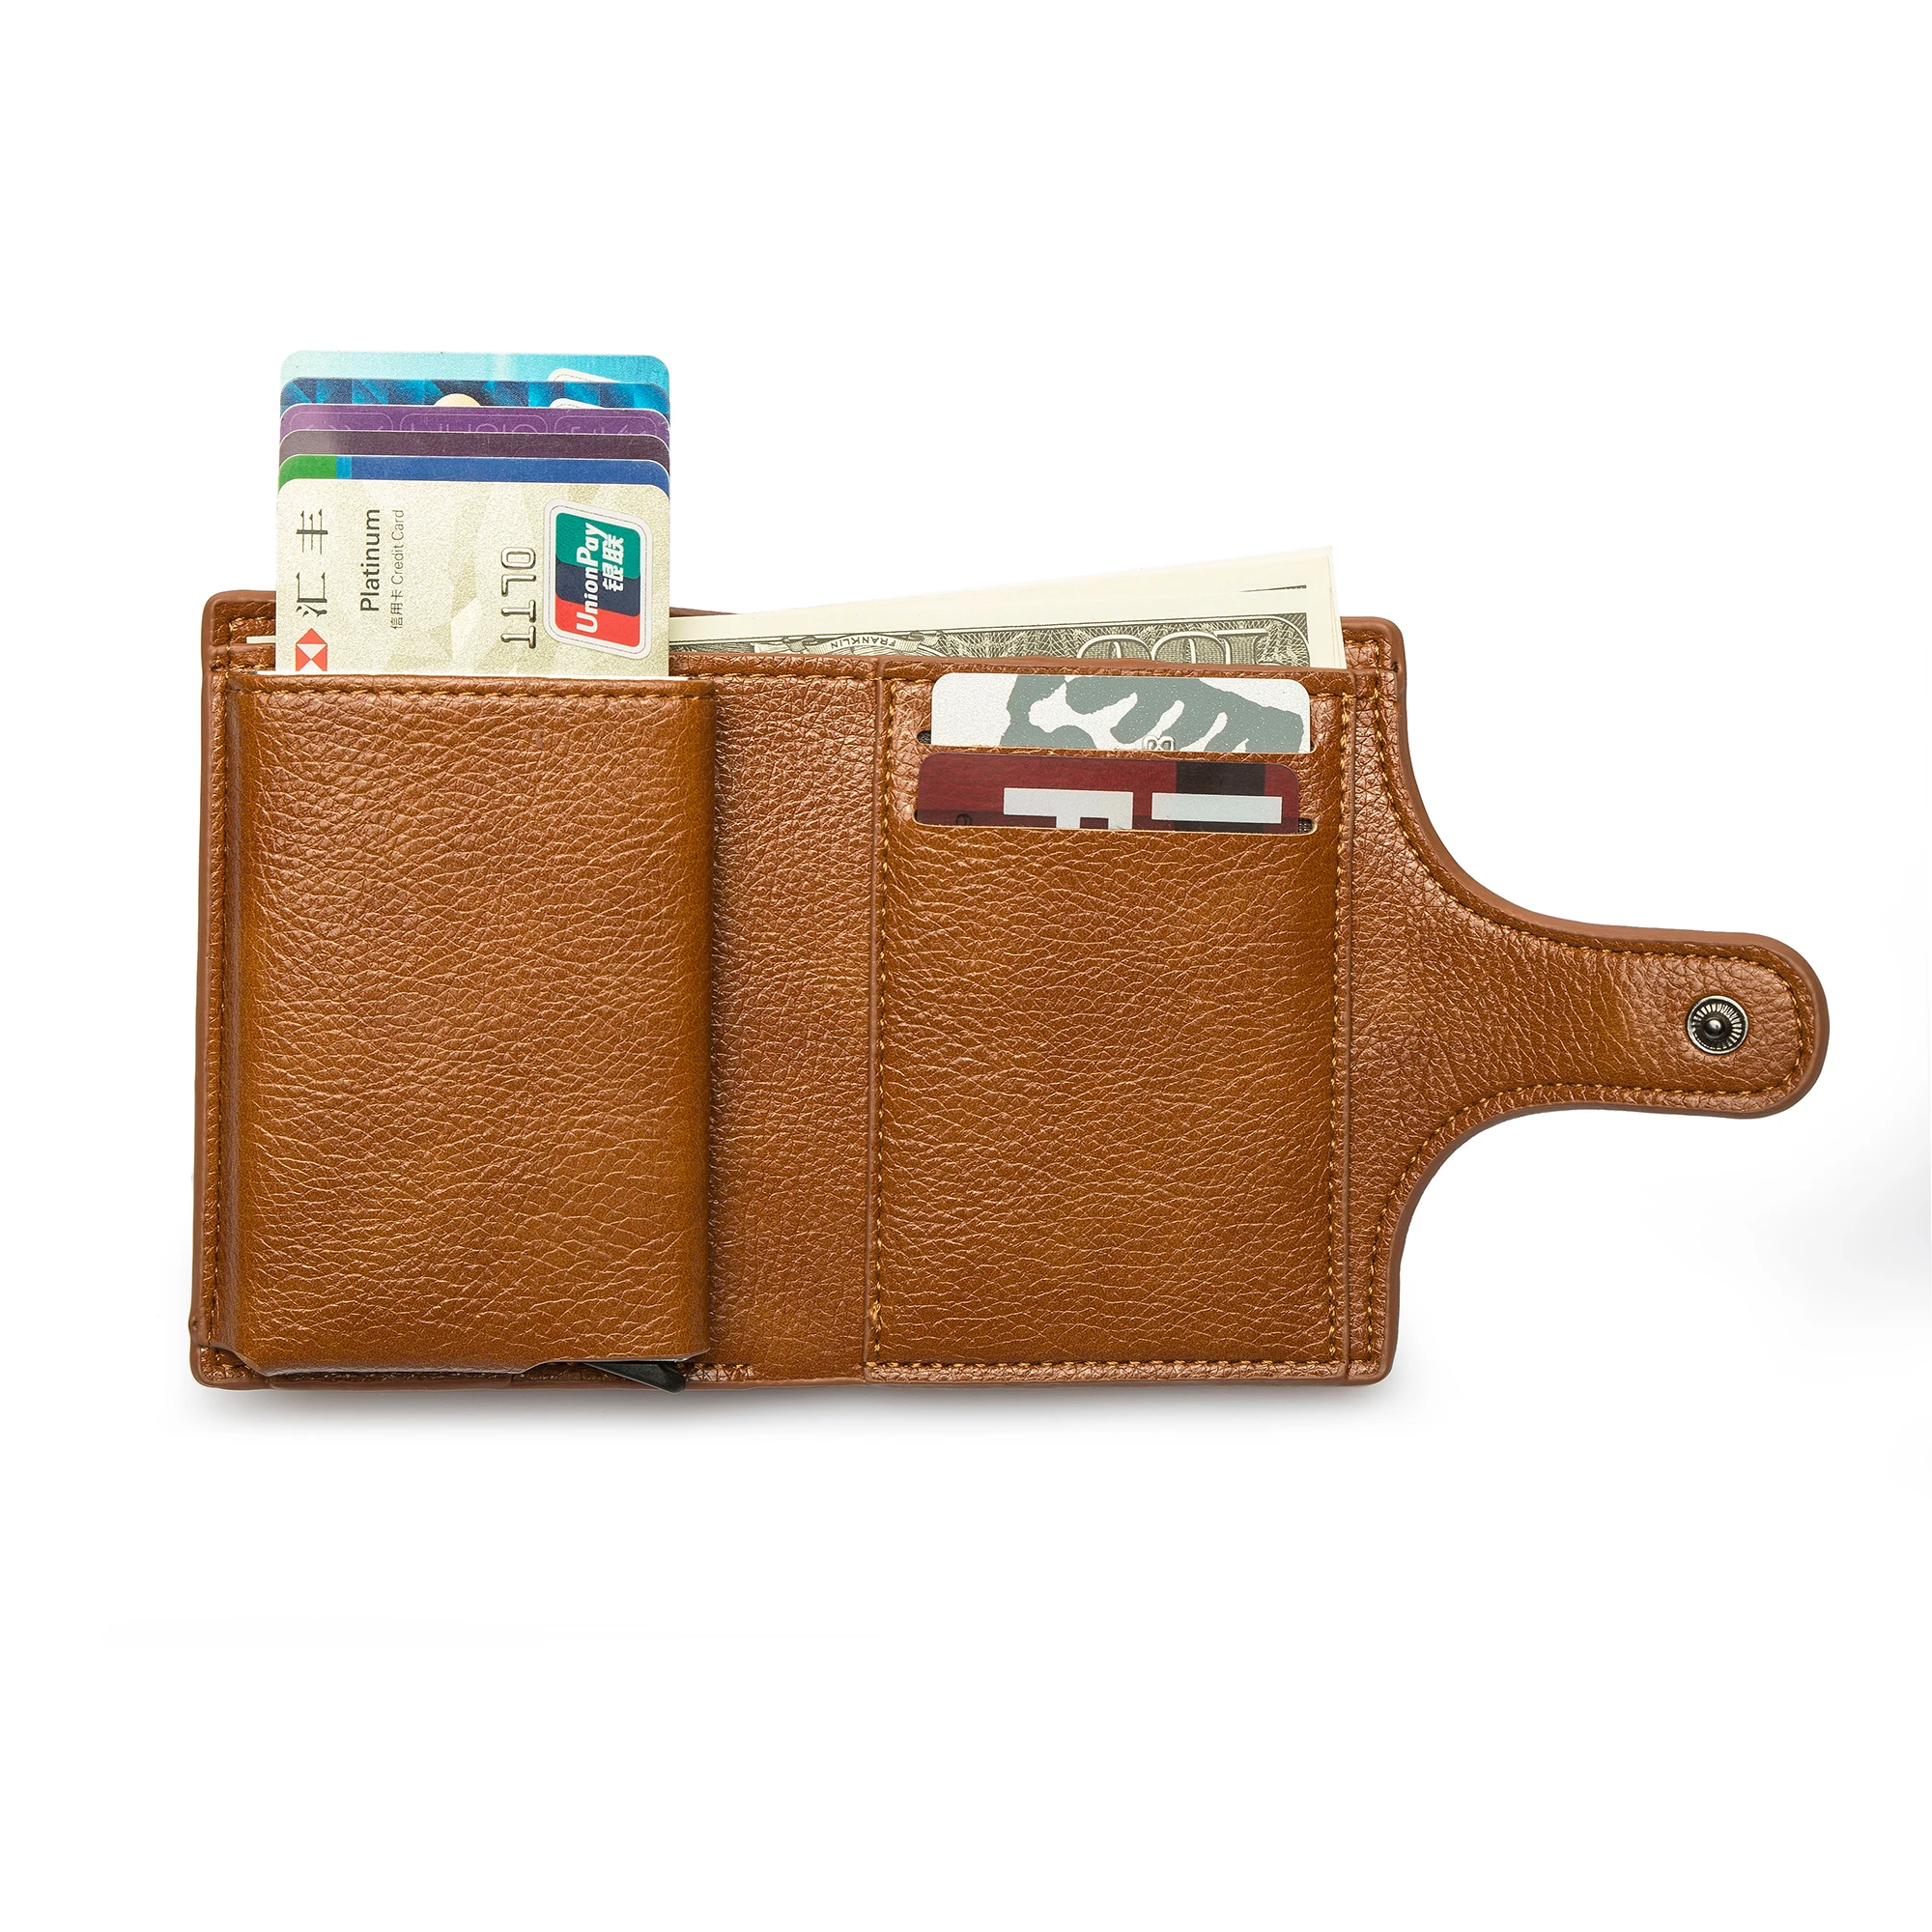 BISI GORO держатель для карт протектор мужской бумажник из искусственной кожи для женщин умный тонкий RFID Чехол для карт унисекс модный солидный кошелек